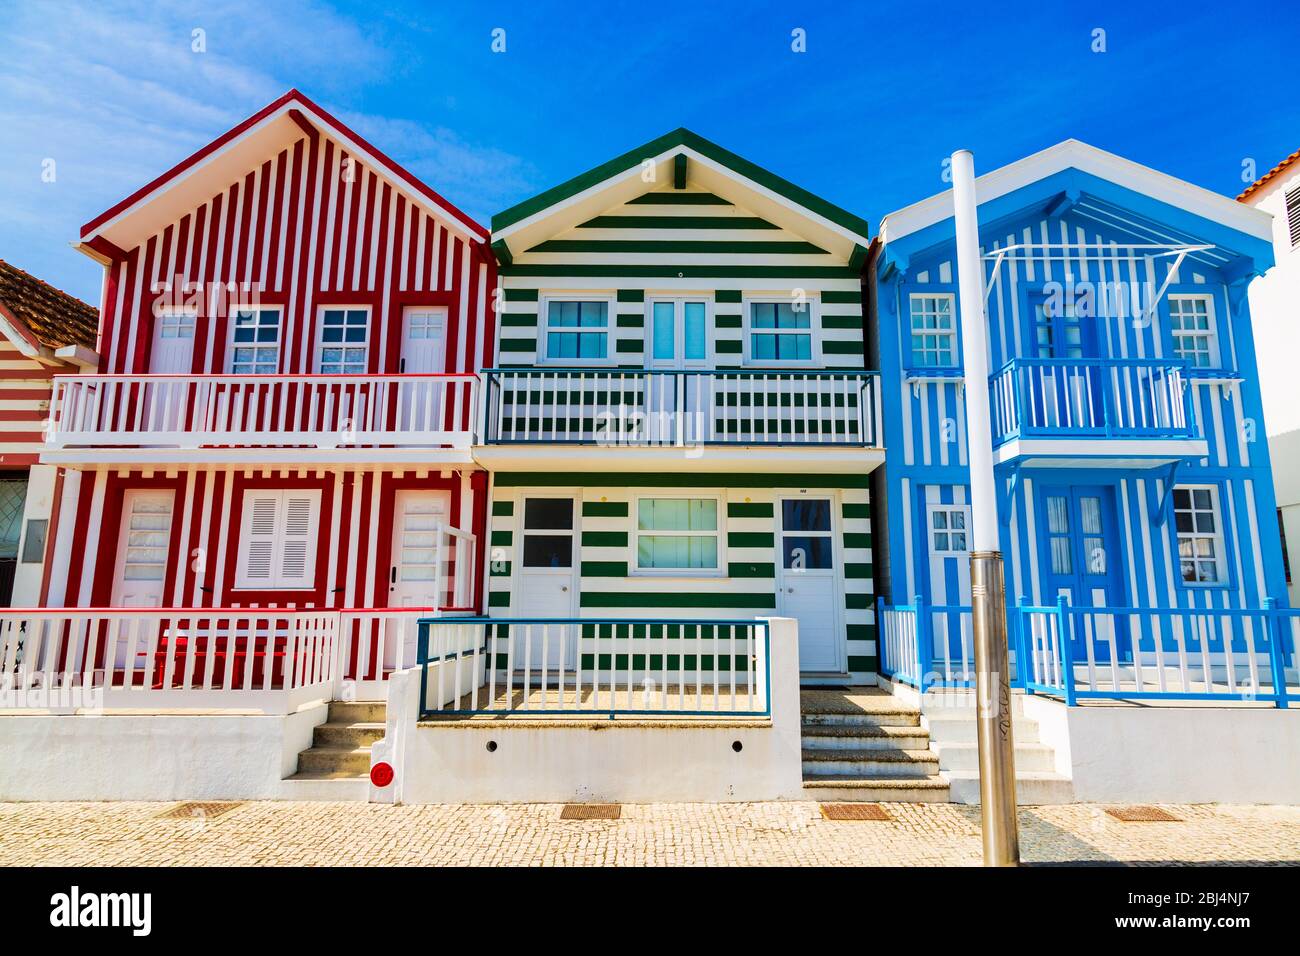 Costa Nova, Portugal: Bunt gestreifte Häuser genannt Palheiros im Strandresort an der Atlantikküste in der Nähe von Aveiro. Stockfoto